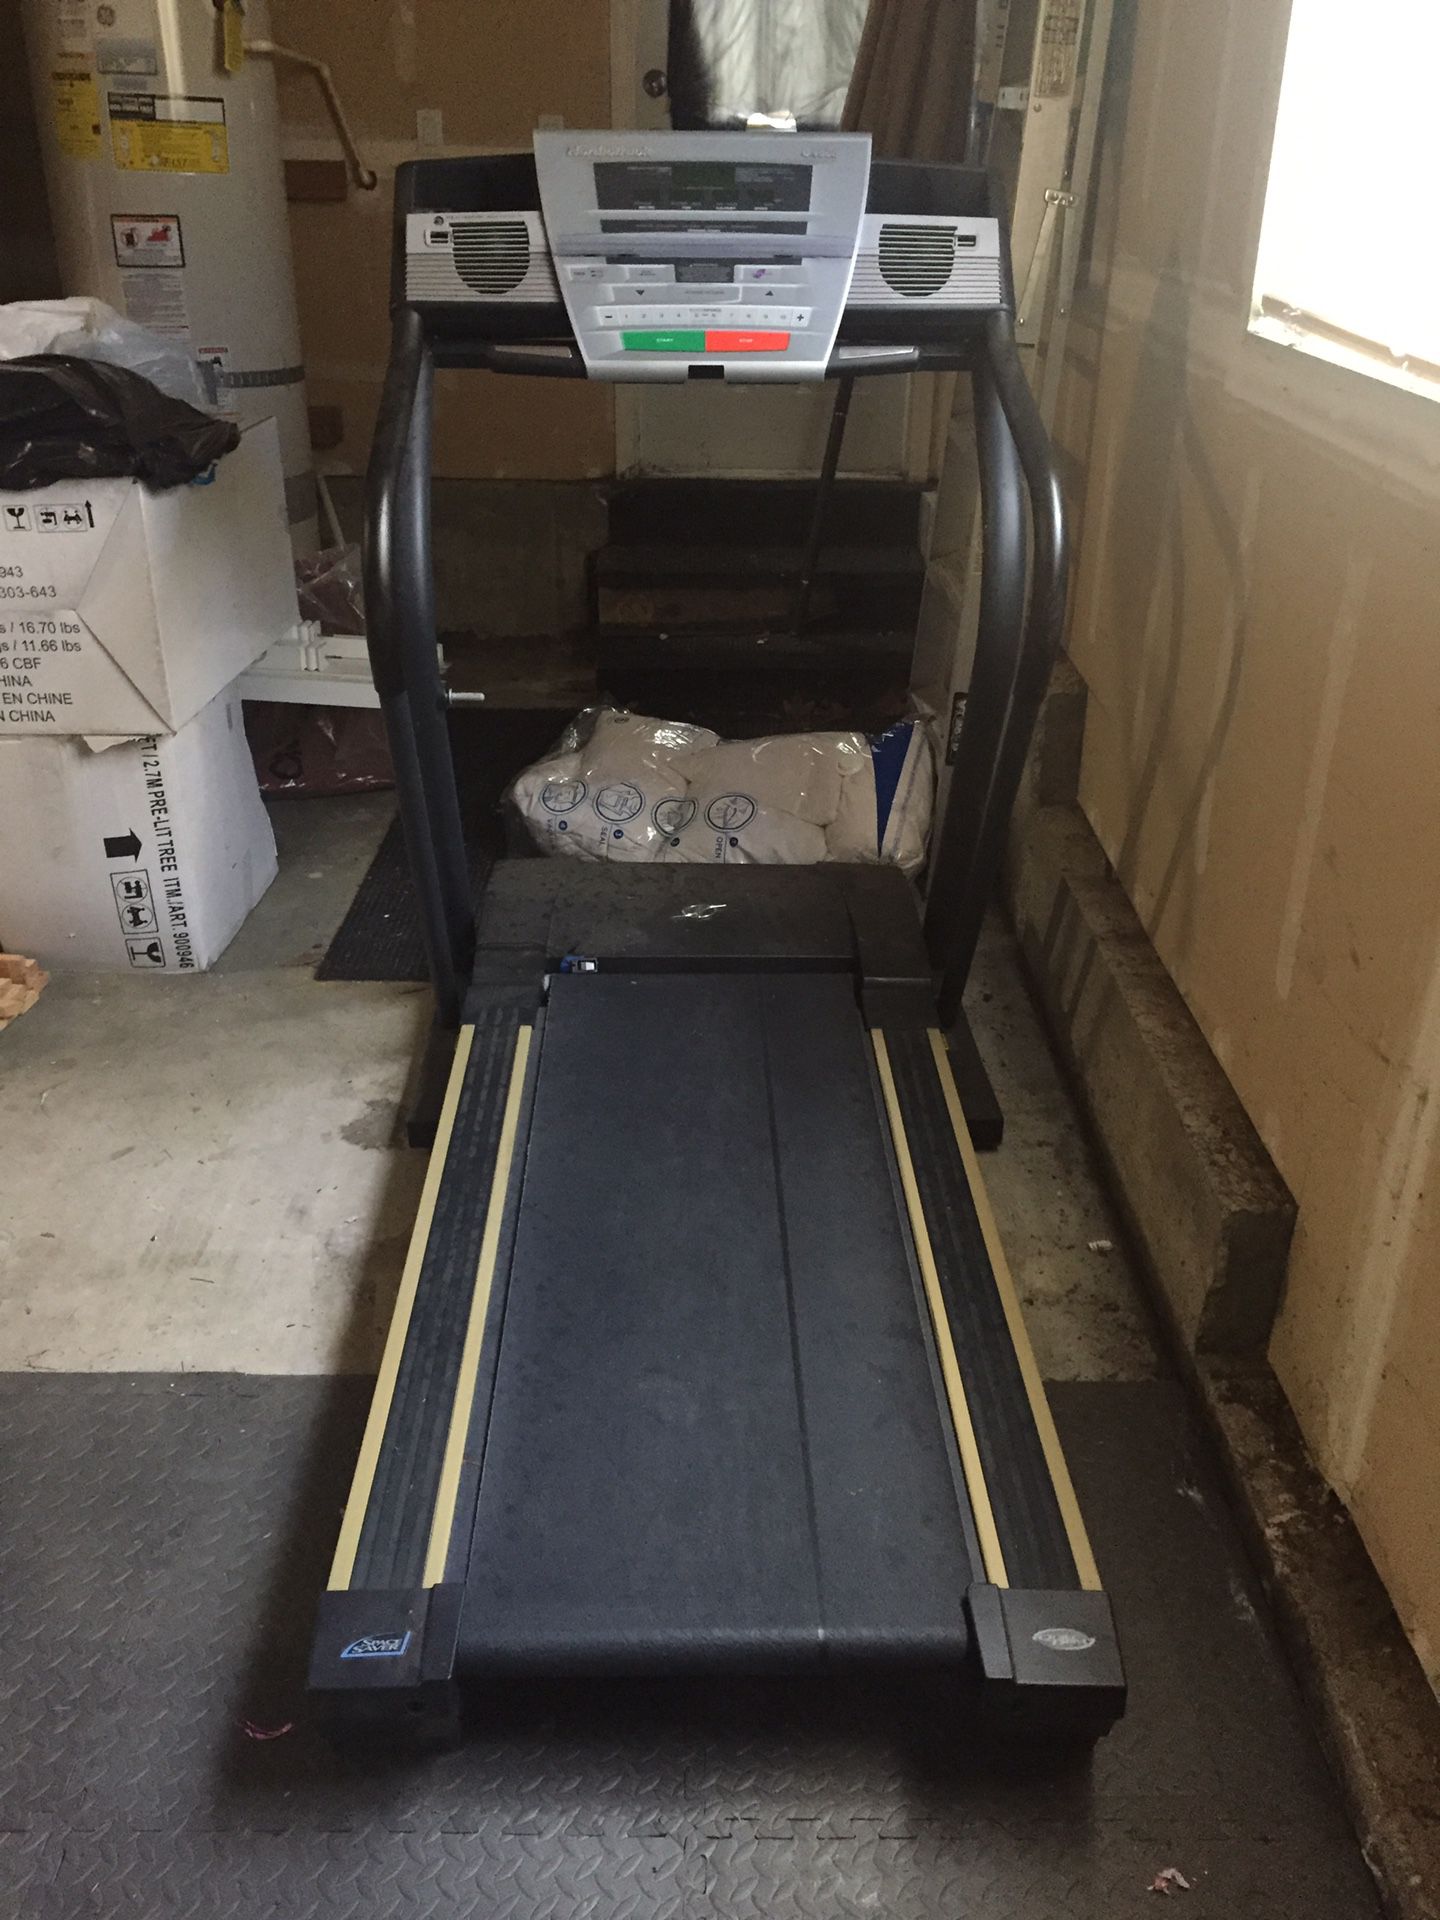 Nordic Track C1900 treadmill